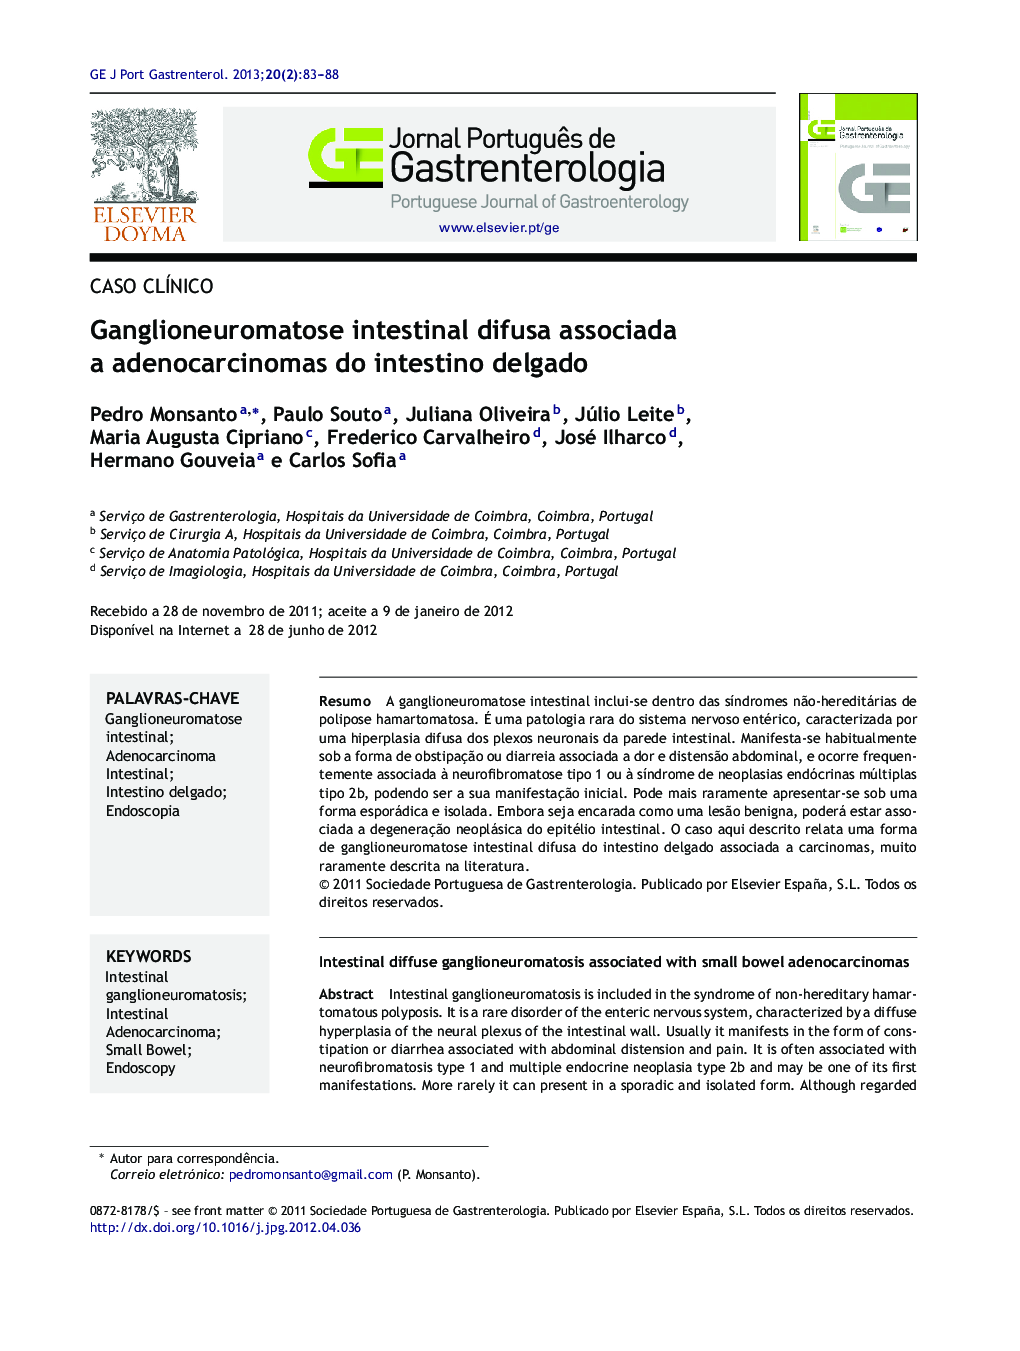 Ganglioneuromatose intestinal difusa associada a adenocarcinomas do intestino delgado